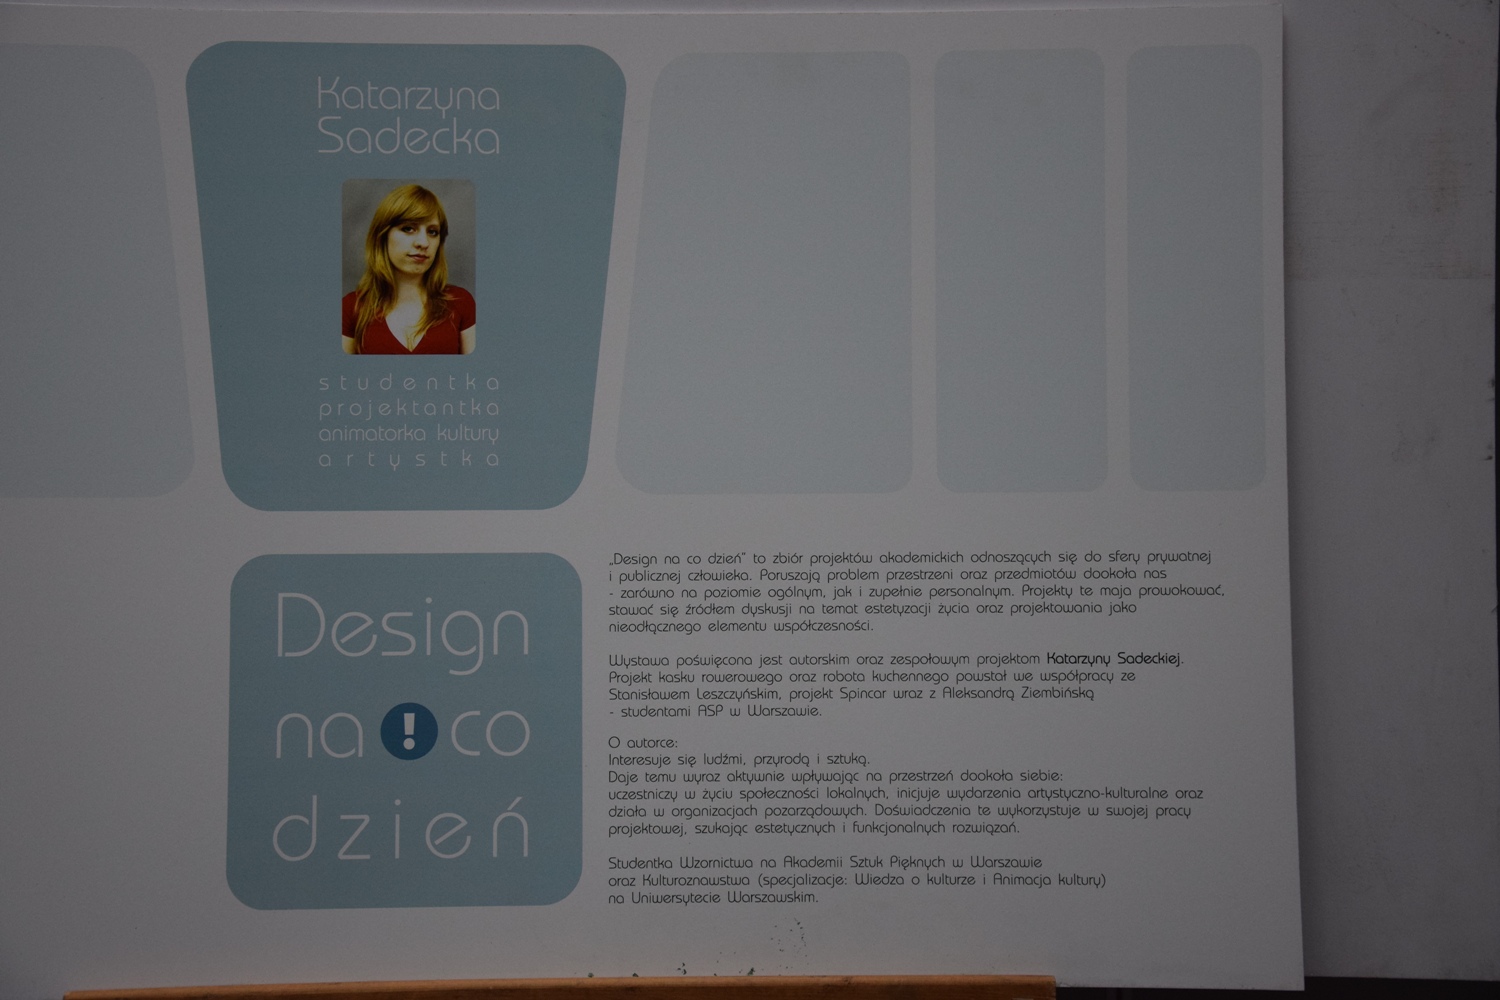 Pierwsza plansza wystawy "Design na co dzień" autorstwa Katarzyny Sadeckiej